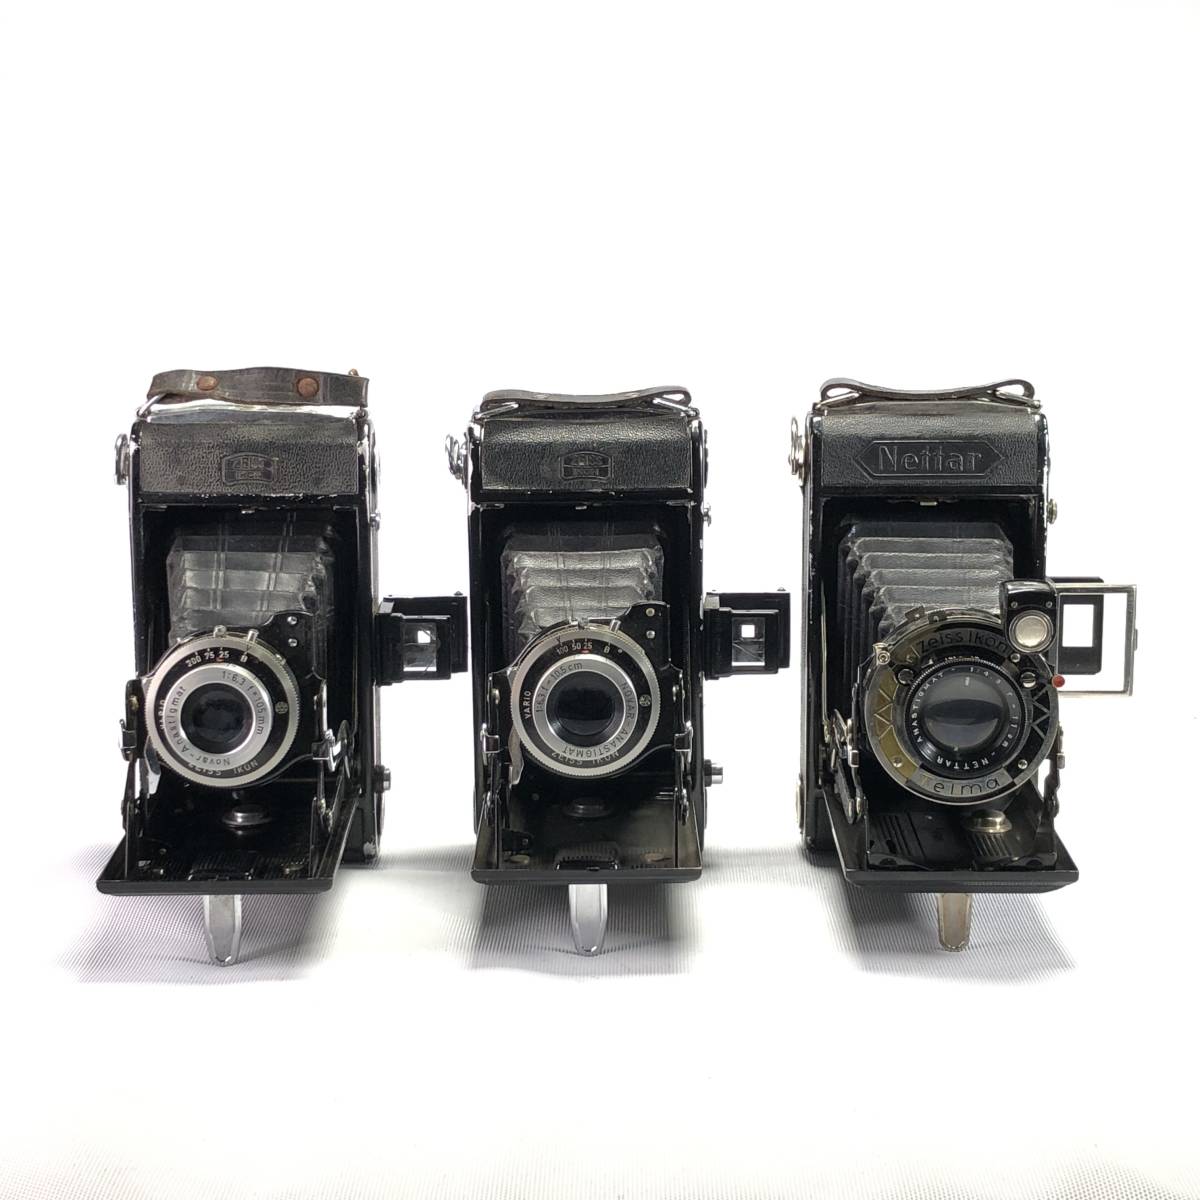 1スタ ZEISS IKON Nettar 515/2 11cm F4.5 10.5cm F6.3 105mm F6.3 ツァイスイコン フォールディング カメラ 3台 現状販売品 1円 ヱOA4_画像2